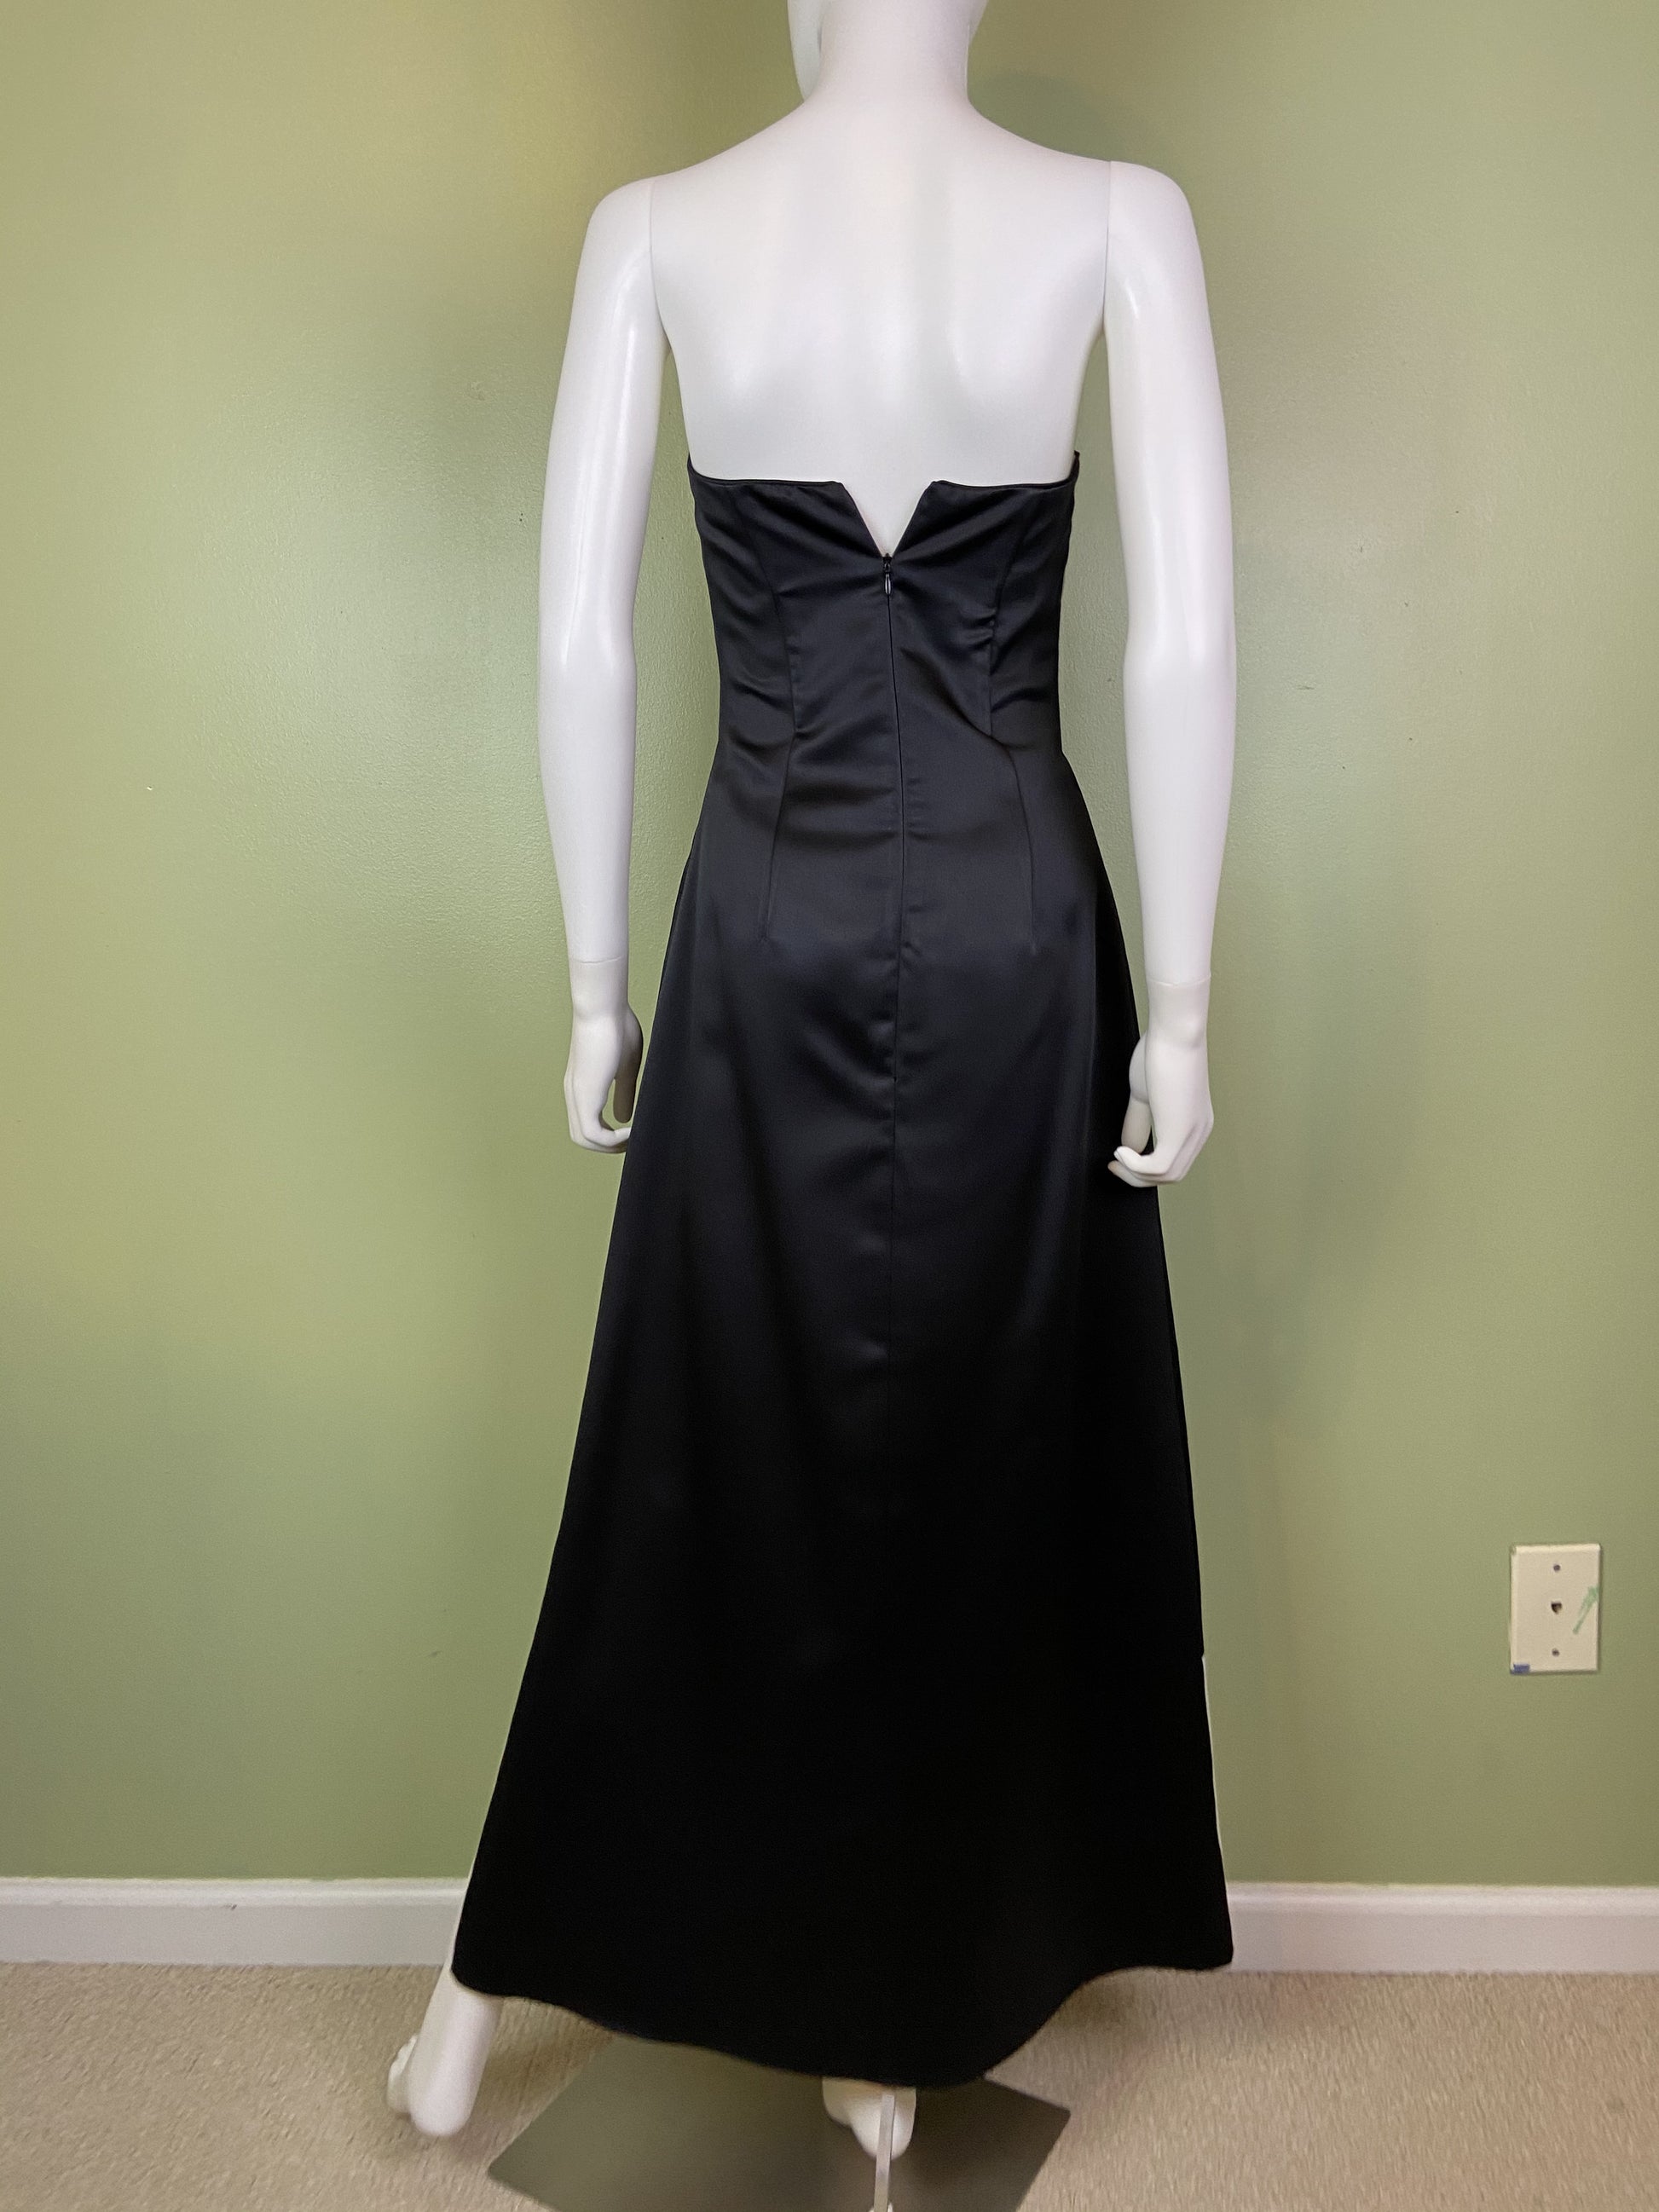 Vintage Satin Black White Checkerboard Tuxedo Gown Abby Essie